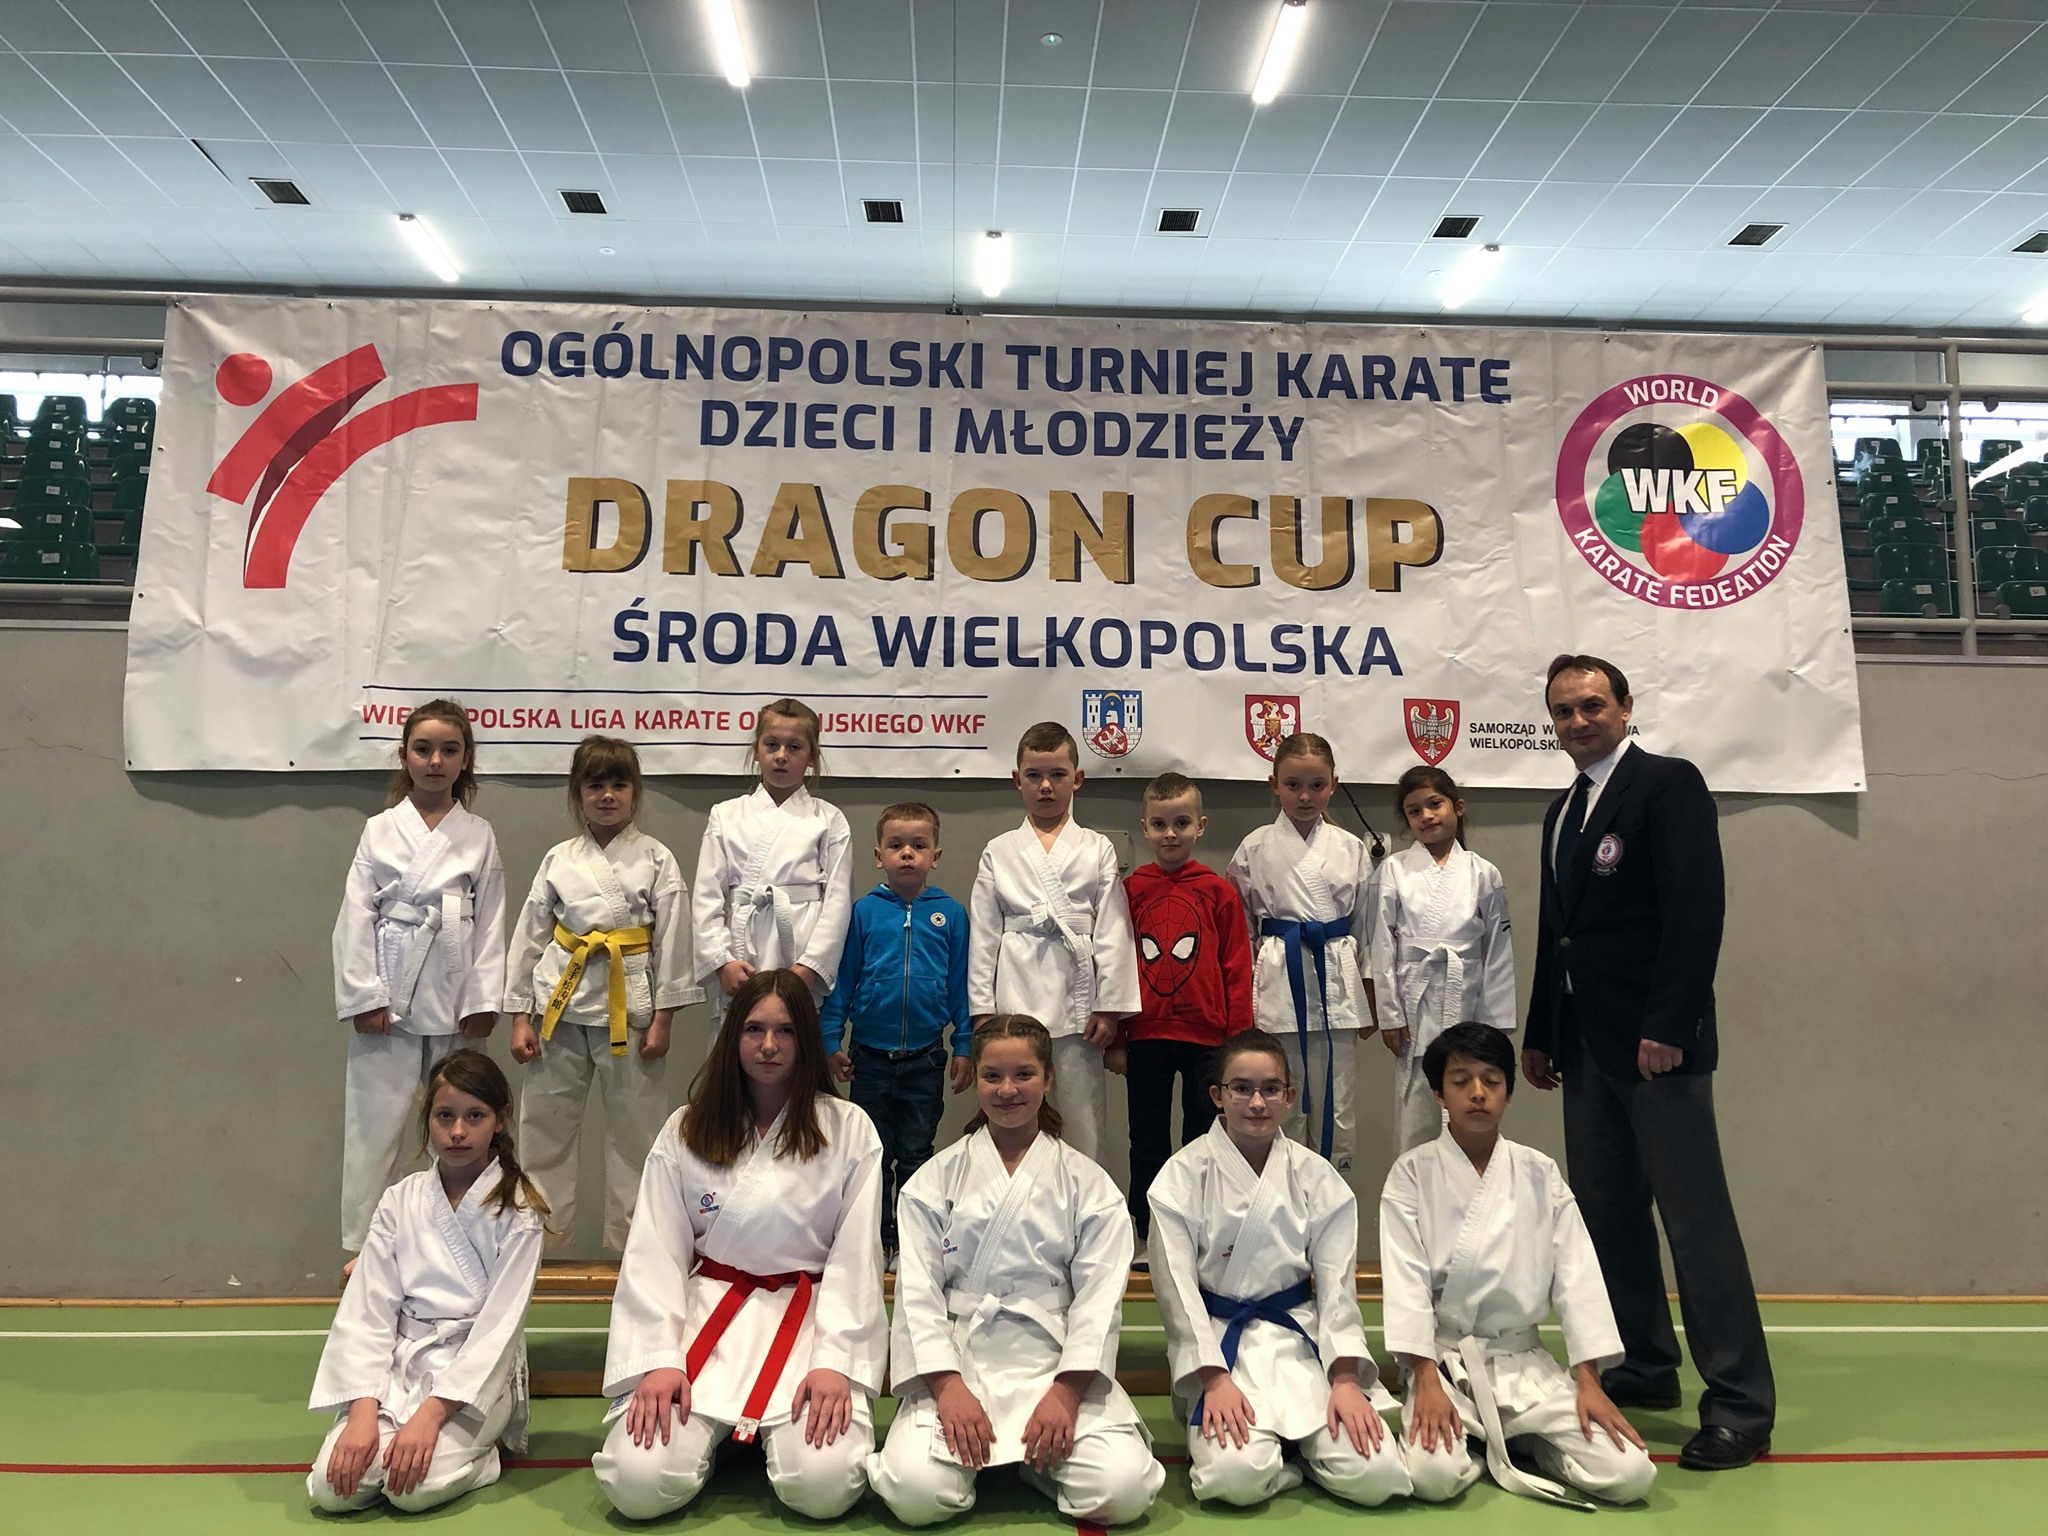 XXVII Ogólnopolski Turniej Karate Dzieci i Młodzieży DRAGON CUP 2021